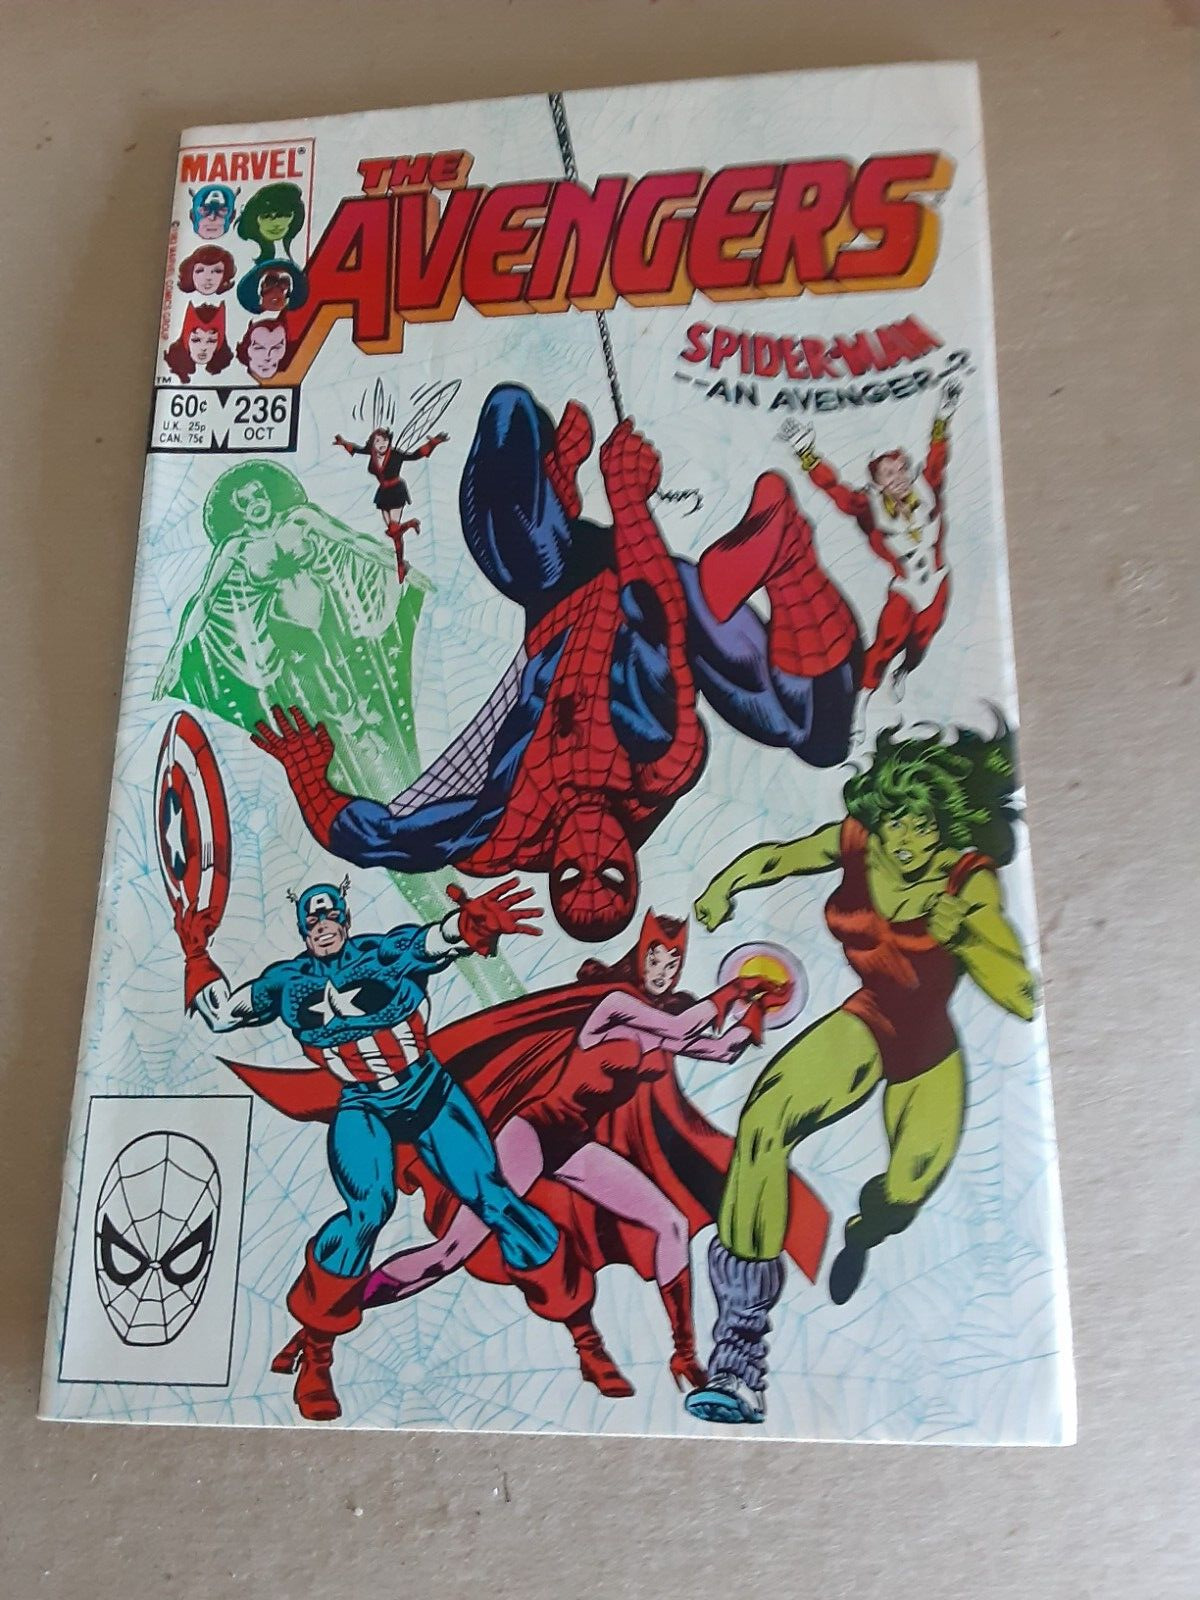 Avengers #236 (1983,Marvel Comics) Spider-Man An Avenger?, She Hulk,